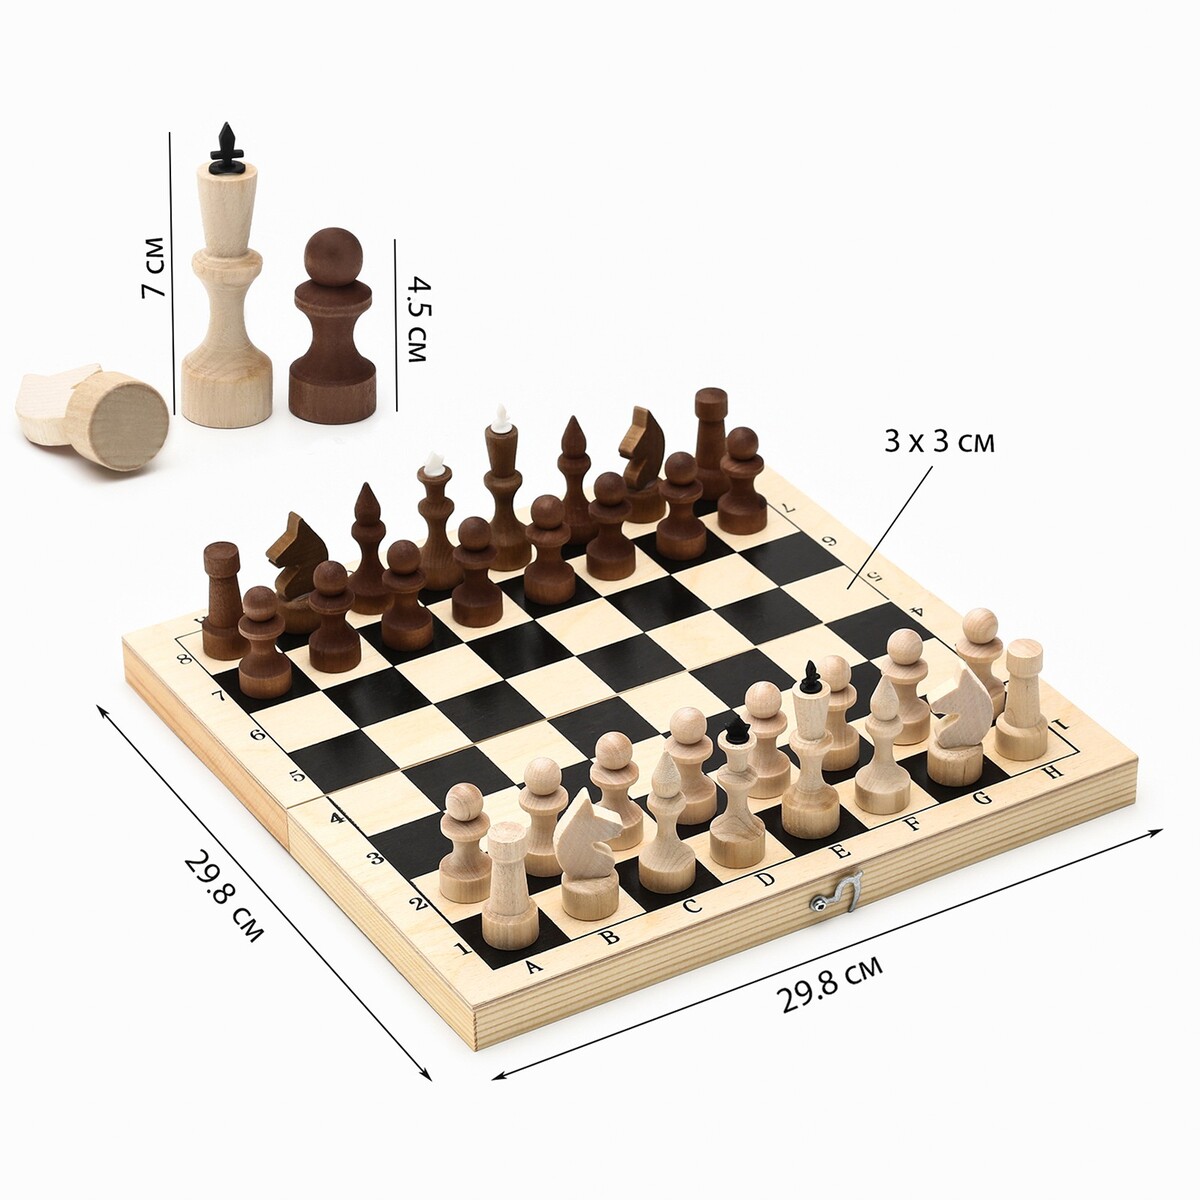 Шахматы деревянные обиходные 29.8 х 29.8 см, король h-7.2 см, пешка h-4.5 см шахматы золотая сказка 665364 деревянные 40х40 см 3в1 шашки нарды подарочный набор